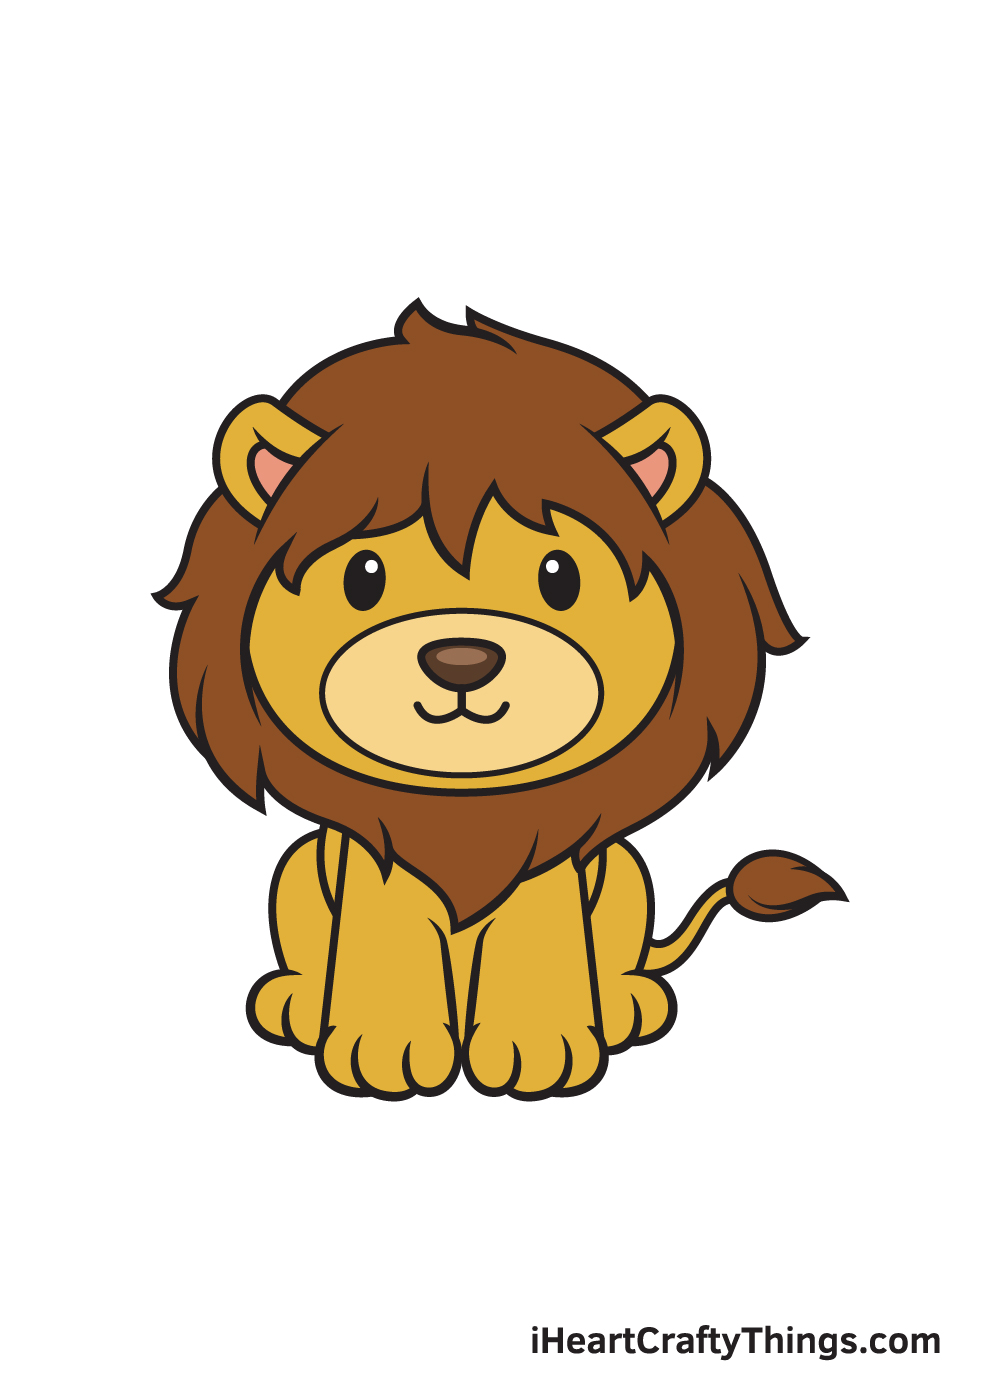 Rất Hay Hướng dẫn cách vẽ con sư tử đơn giản với 8 bước cơ bản